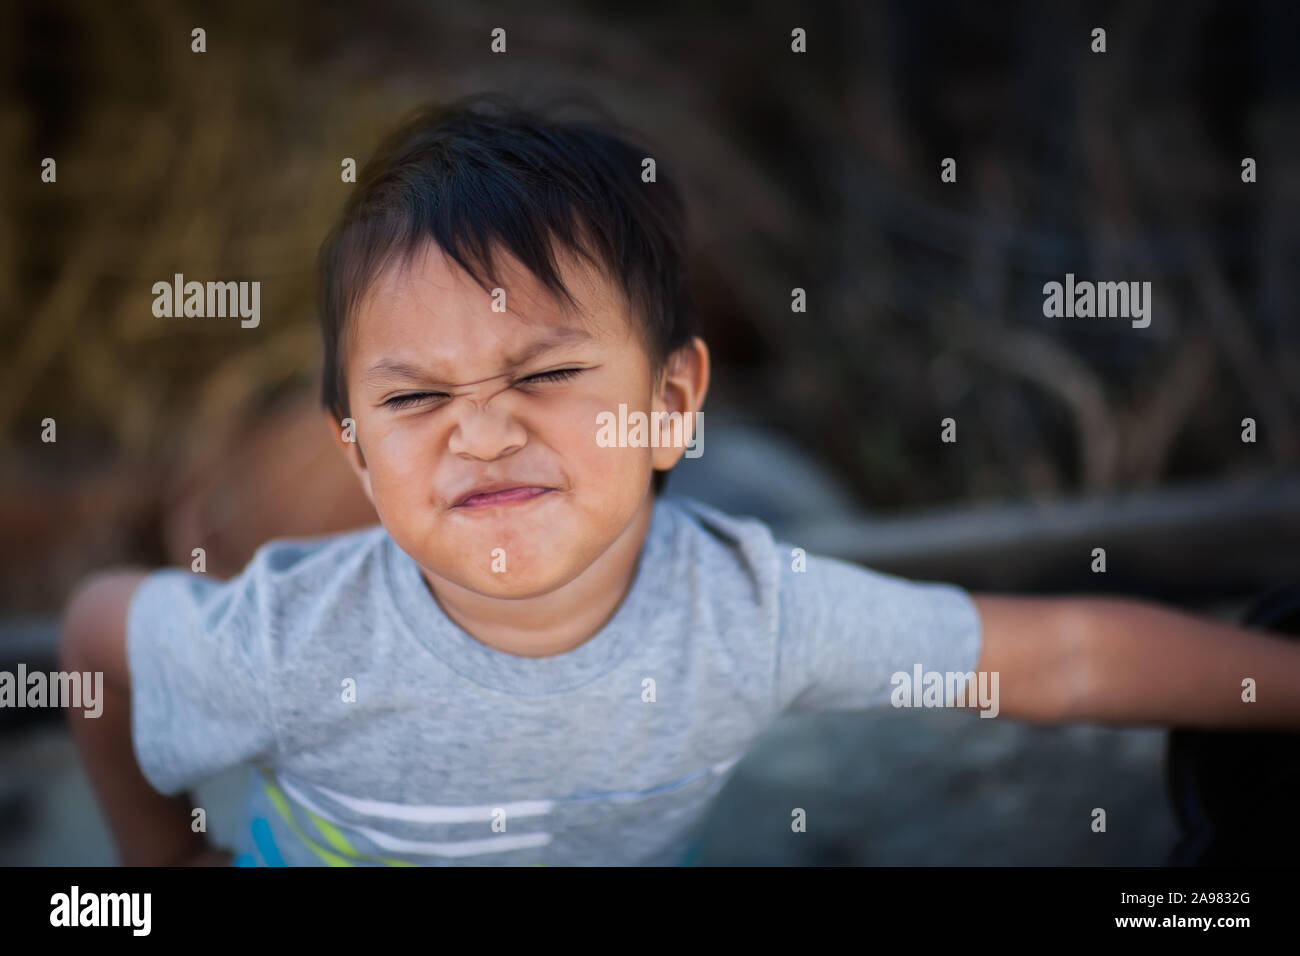 Ein kleiner Junge zum Ausdruck aufgebracht und unkooperative Haltung, indem Sie einen Umgekippten Gesicht und konfrontative Körper Haltung. Stockfoto